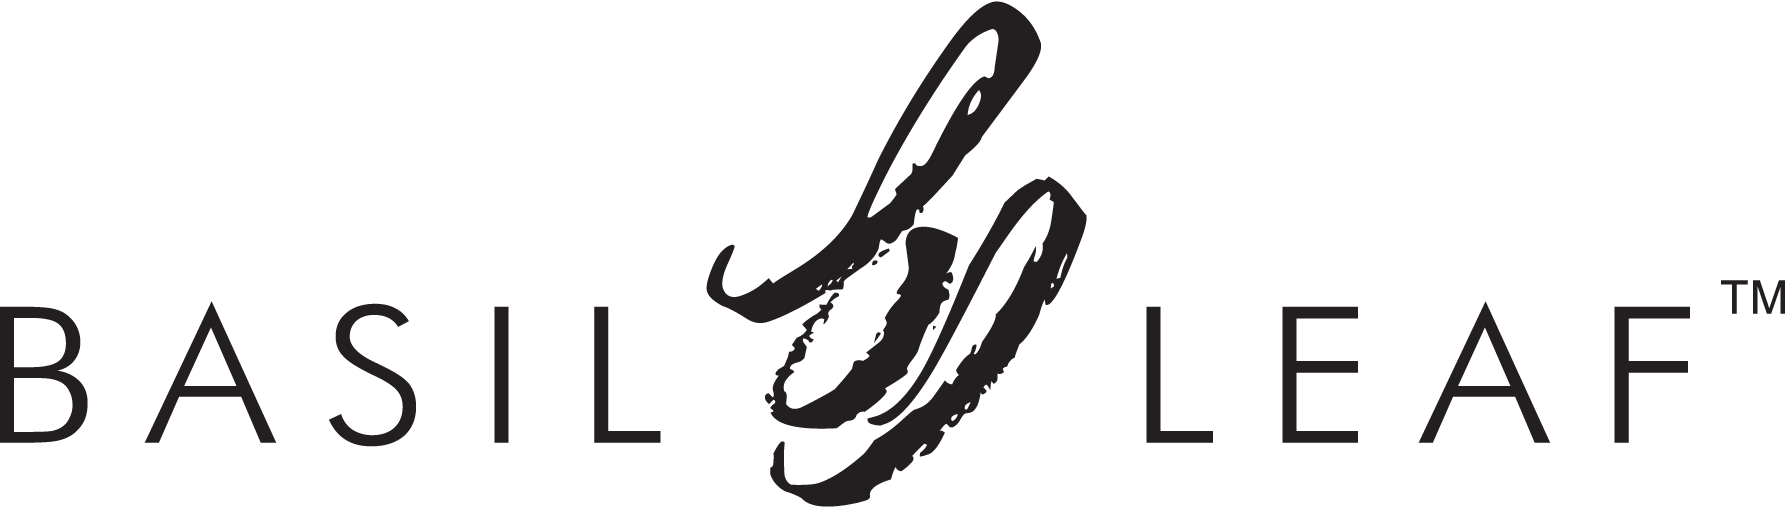 Basil Leaf - Basil Leaf Logo (1785x509)